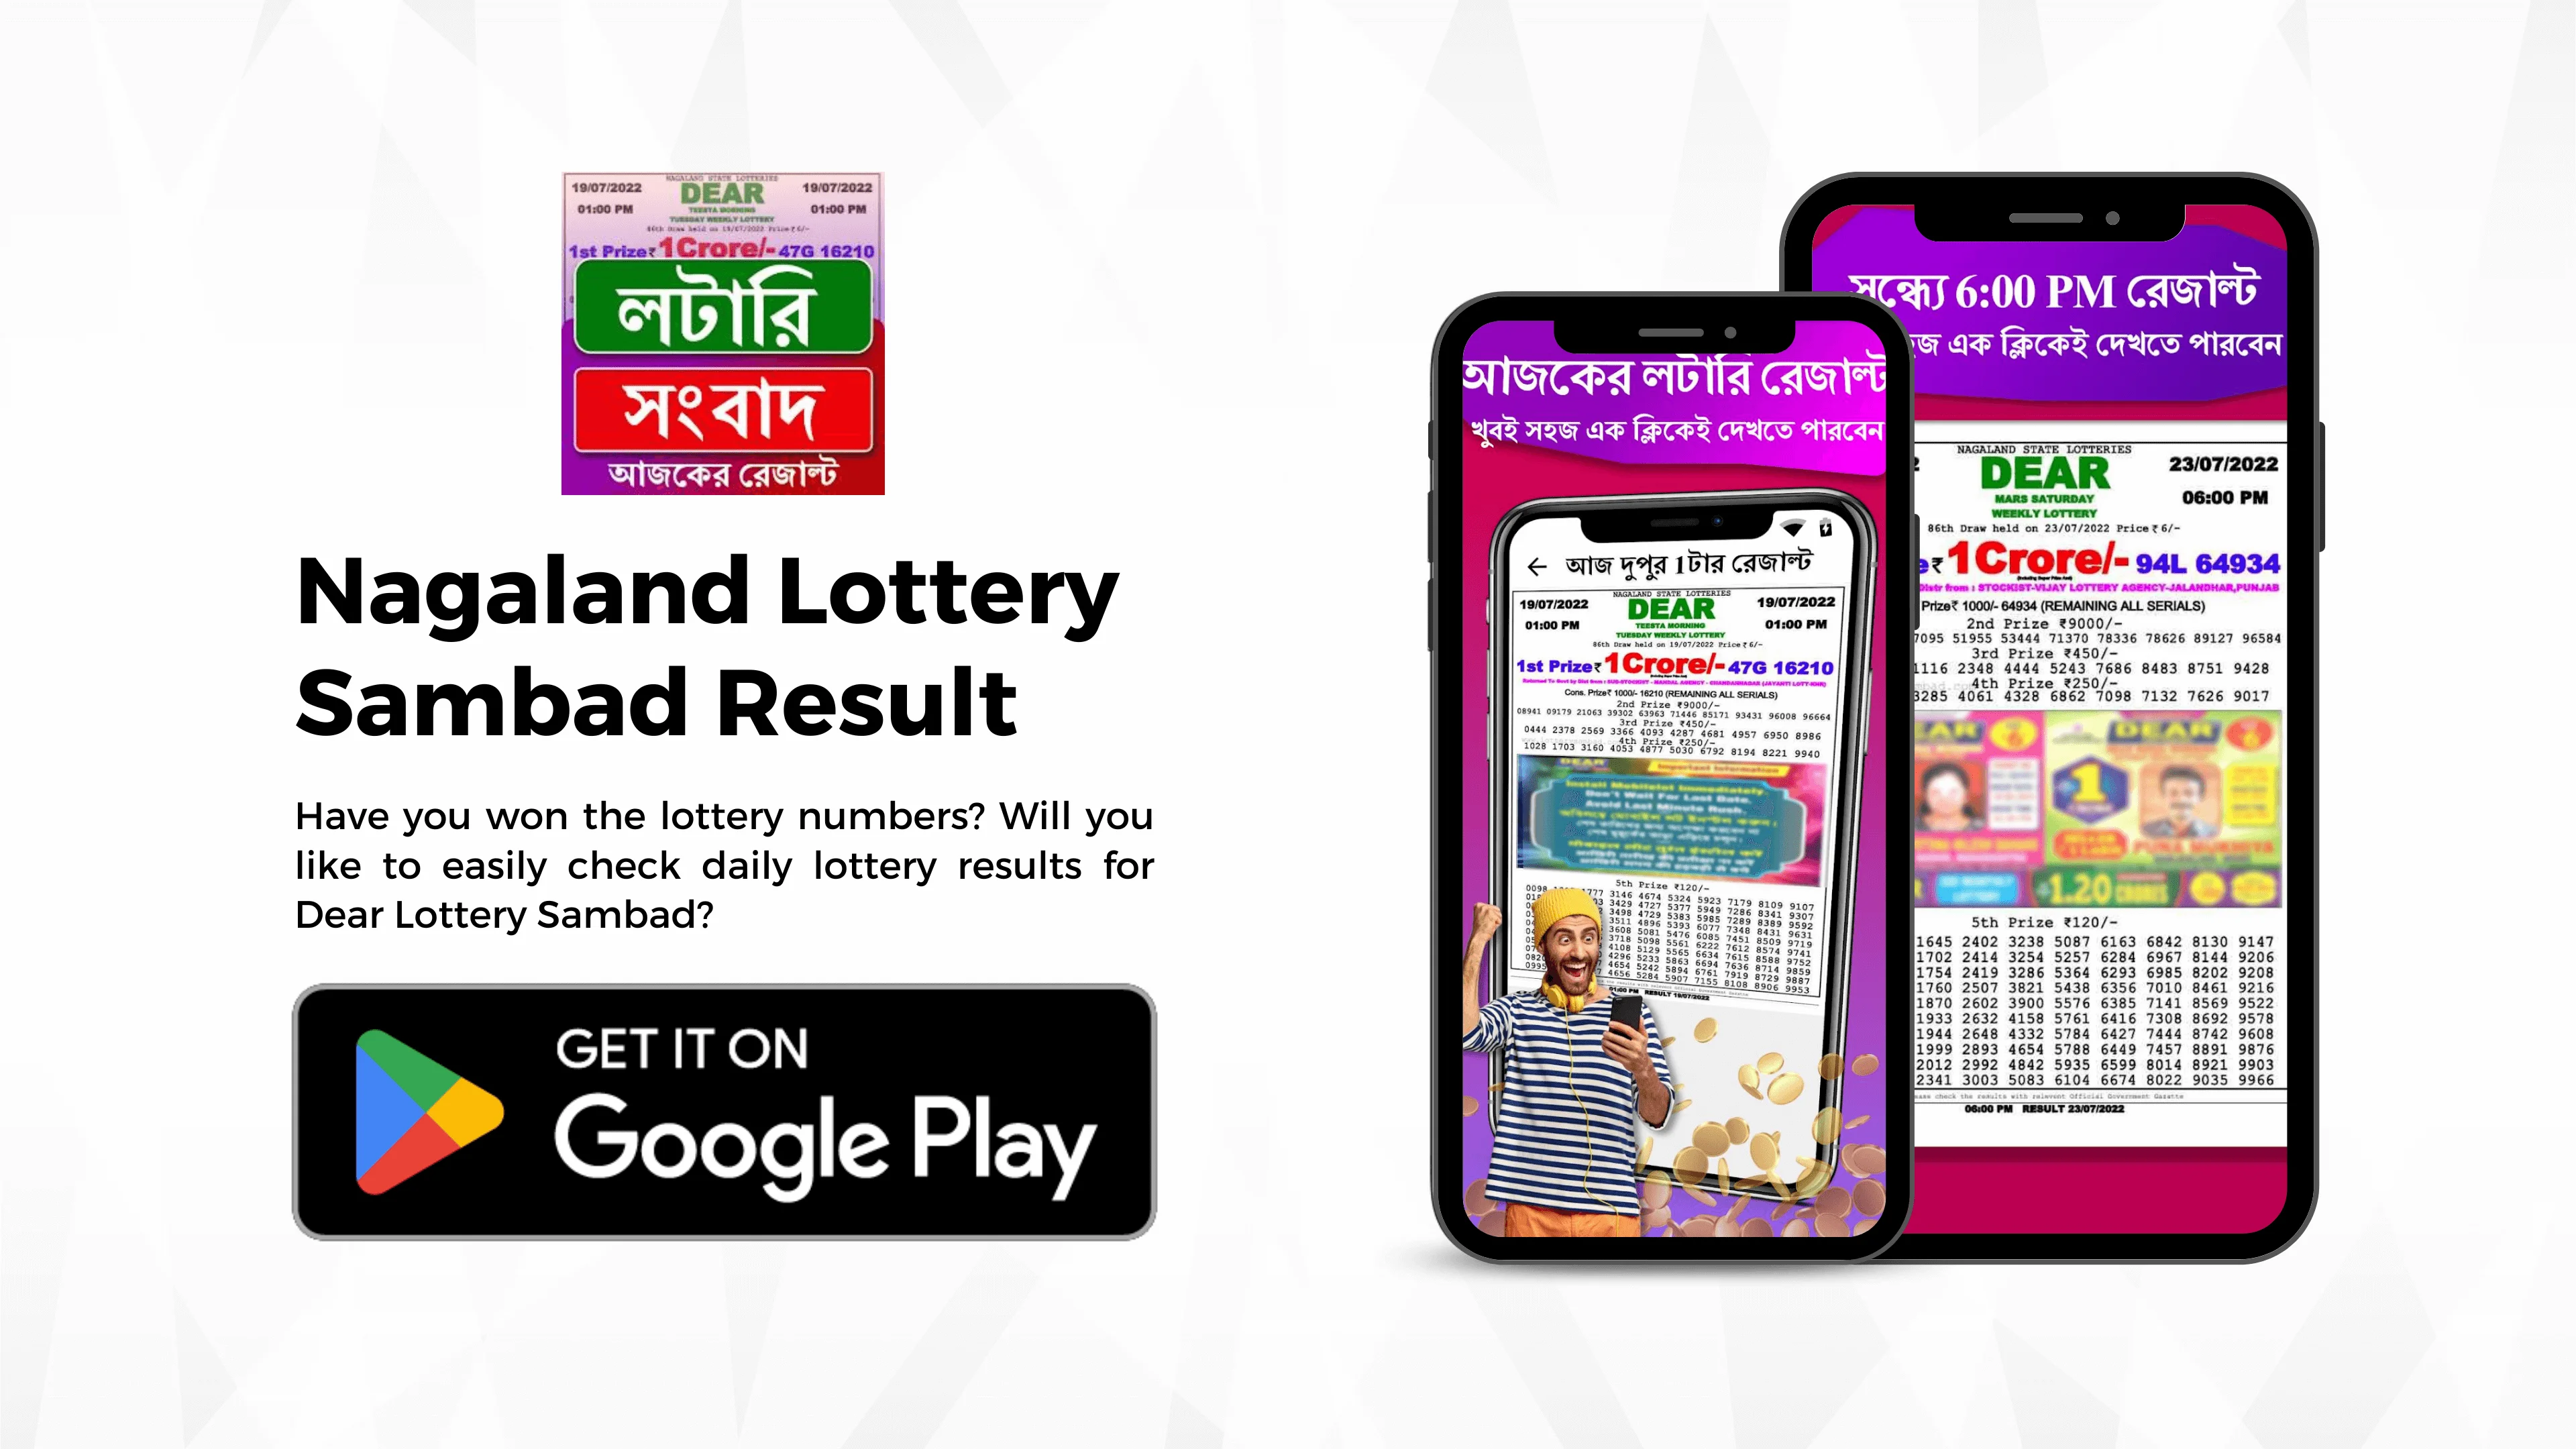 Nagaland Lottery Sambad Result - Papaya Coders